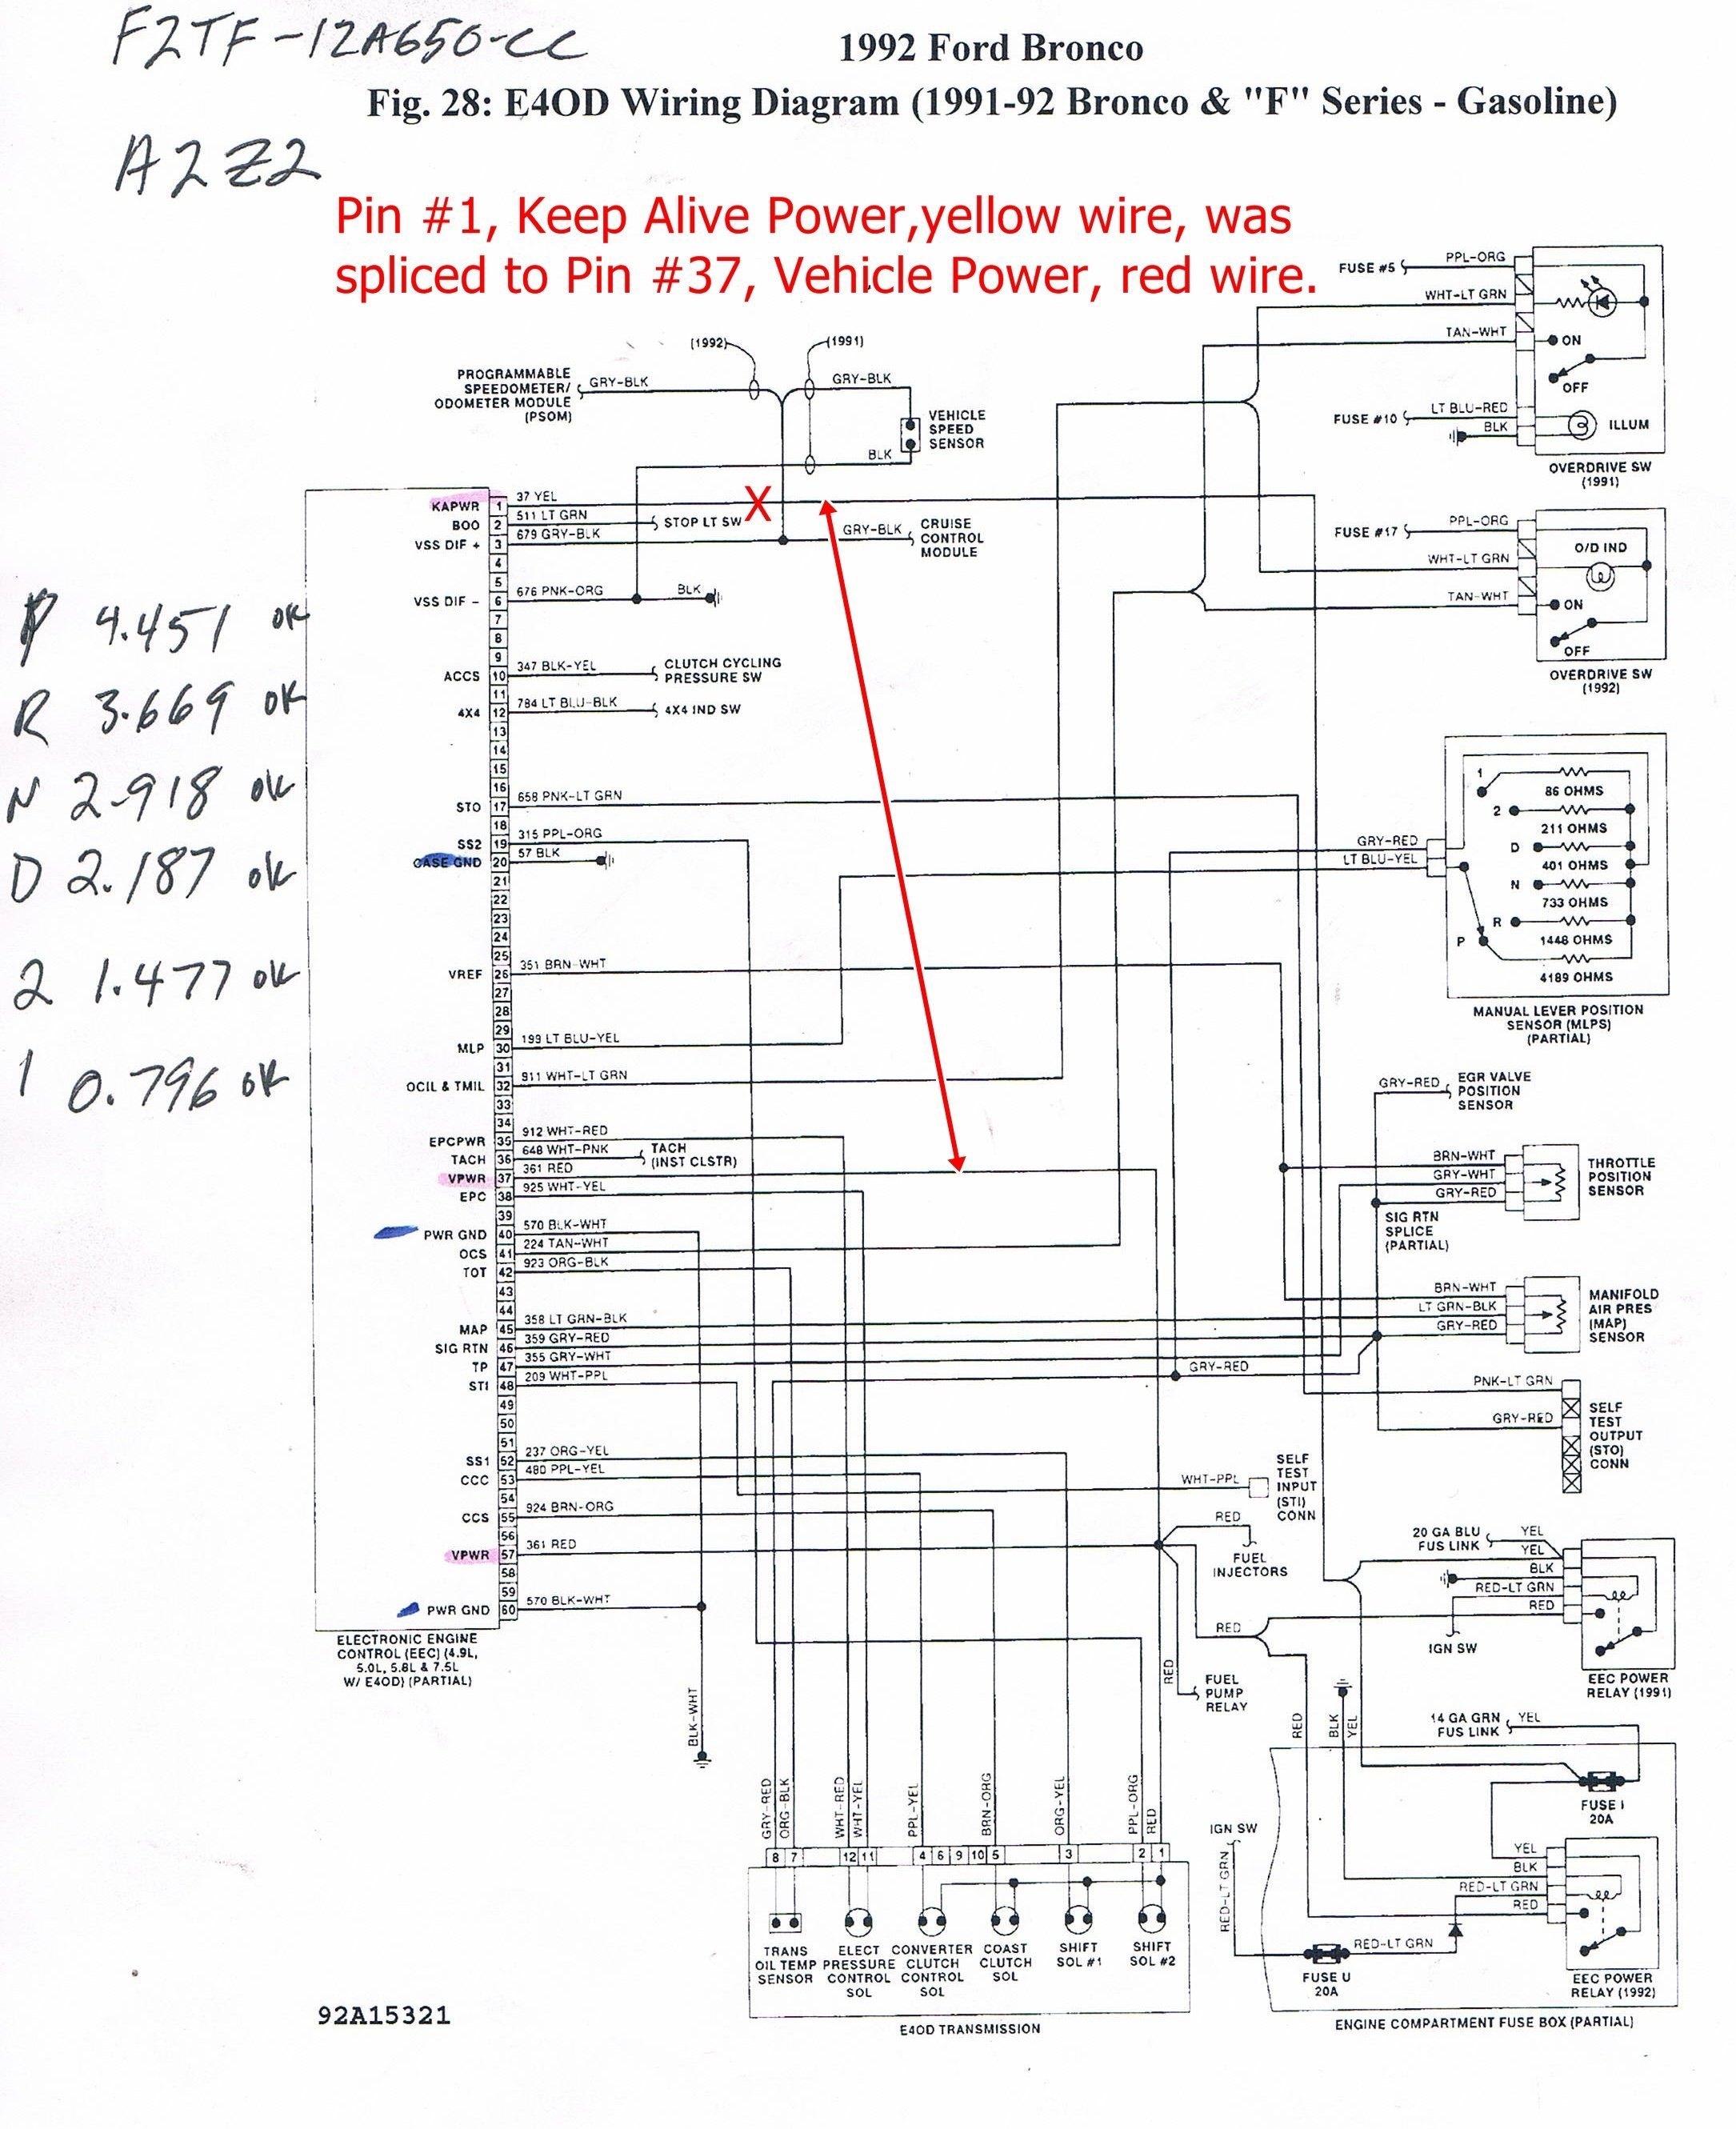 Car Power Window Circuit Diagram Window Wire Diagram Of Car Power Window Circuit Diagram